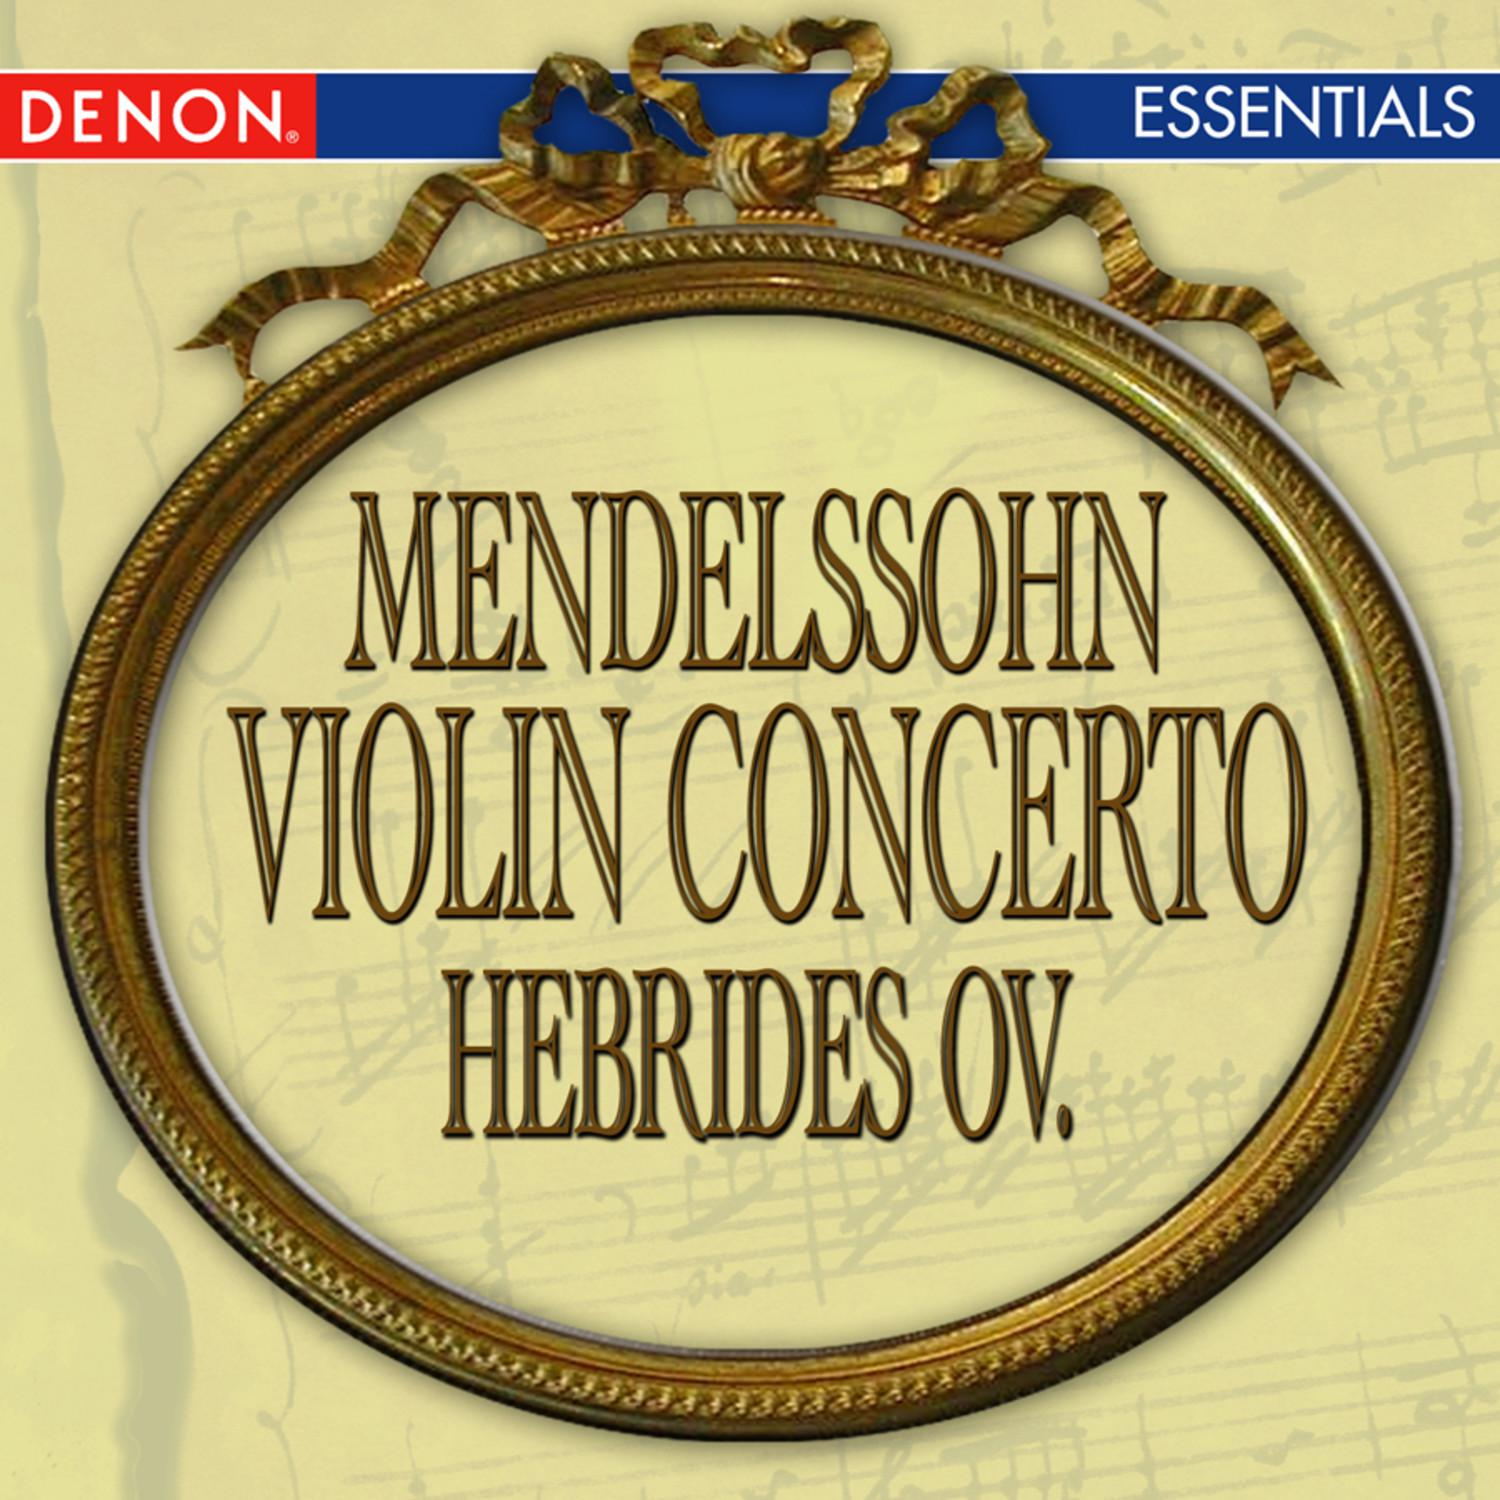 Concerto for Violin and Orchestra in E Minor, Op. 64: III. Allegretto non troppo – Allegro molto vivace